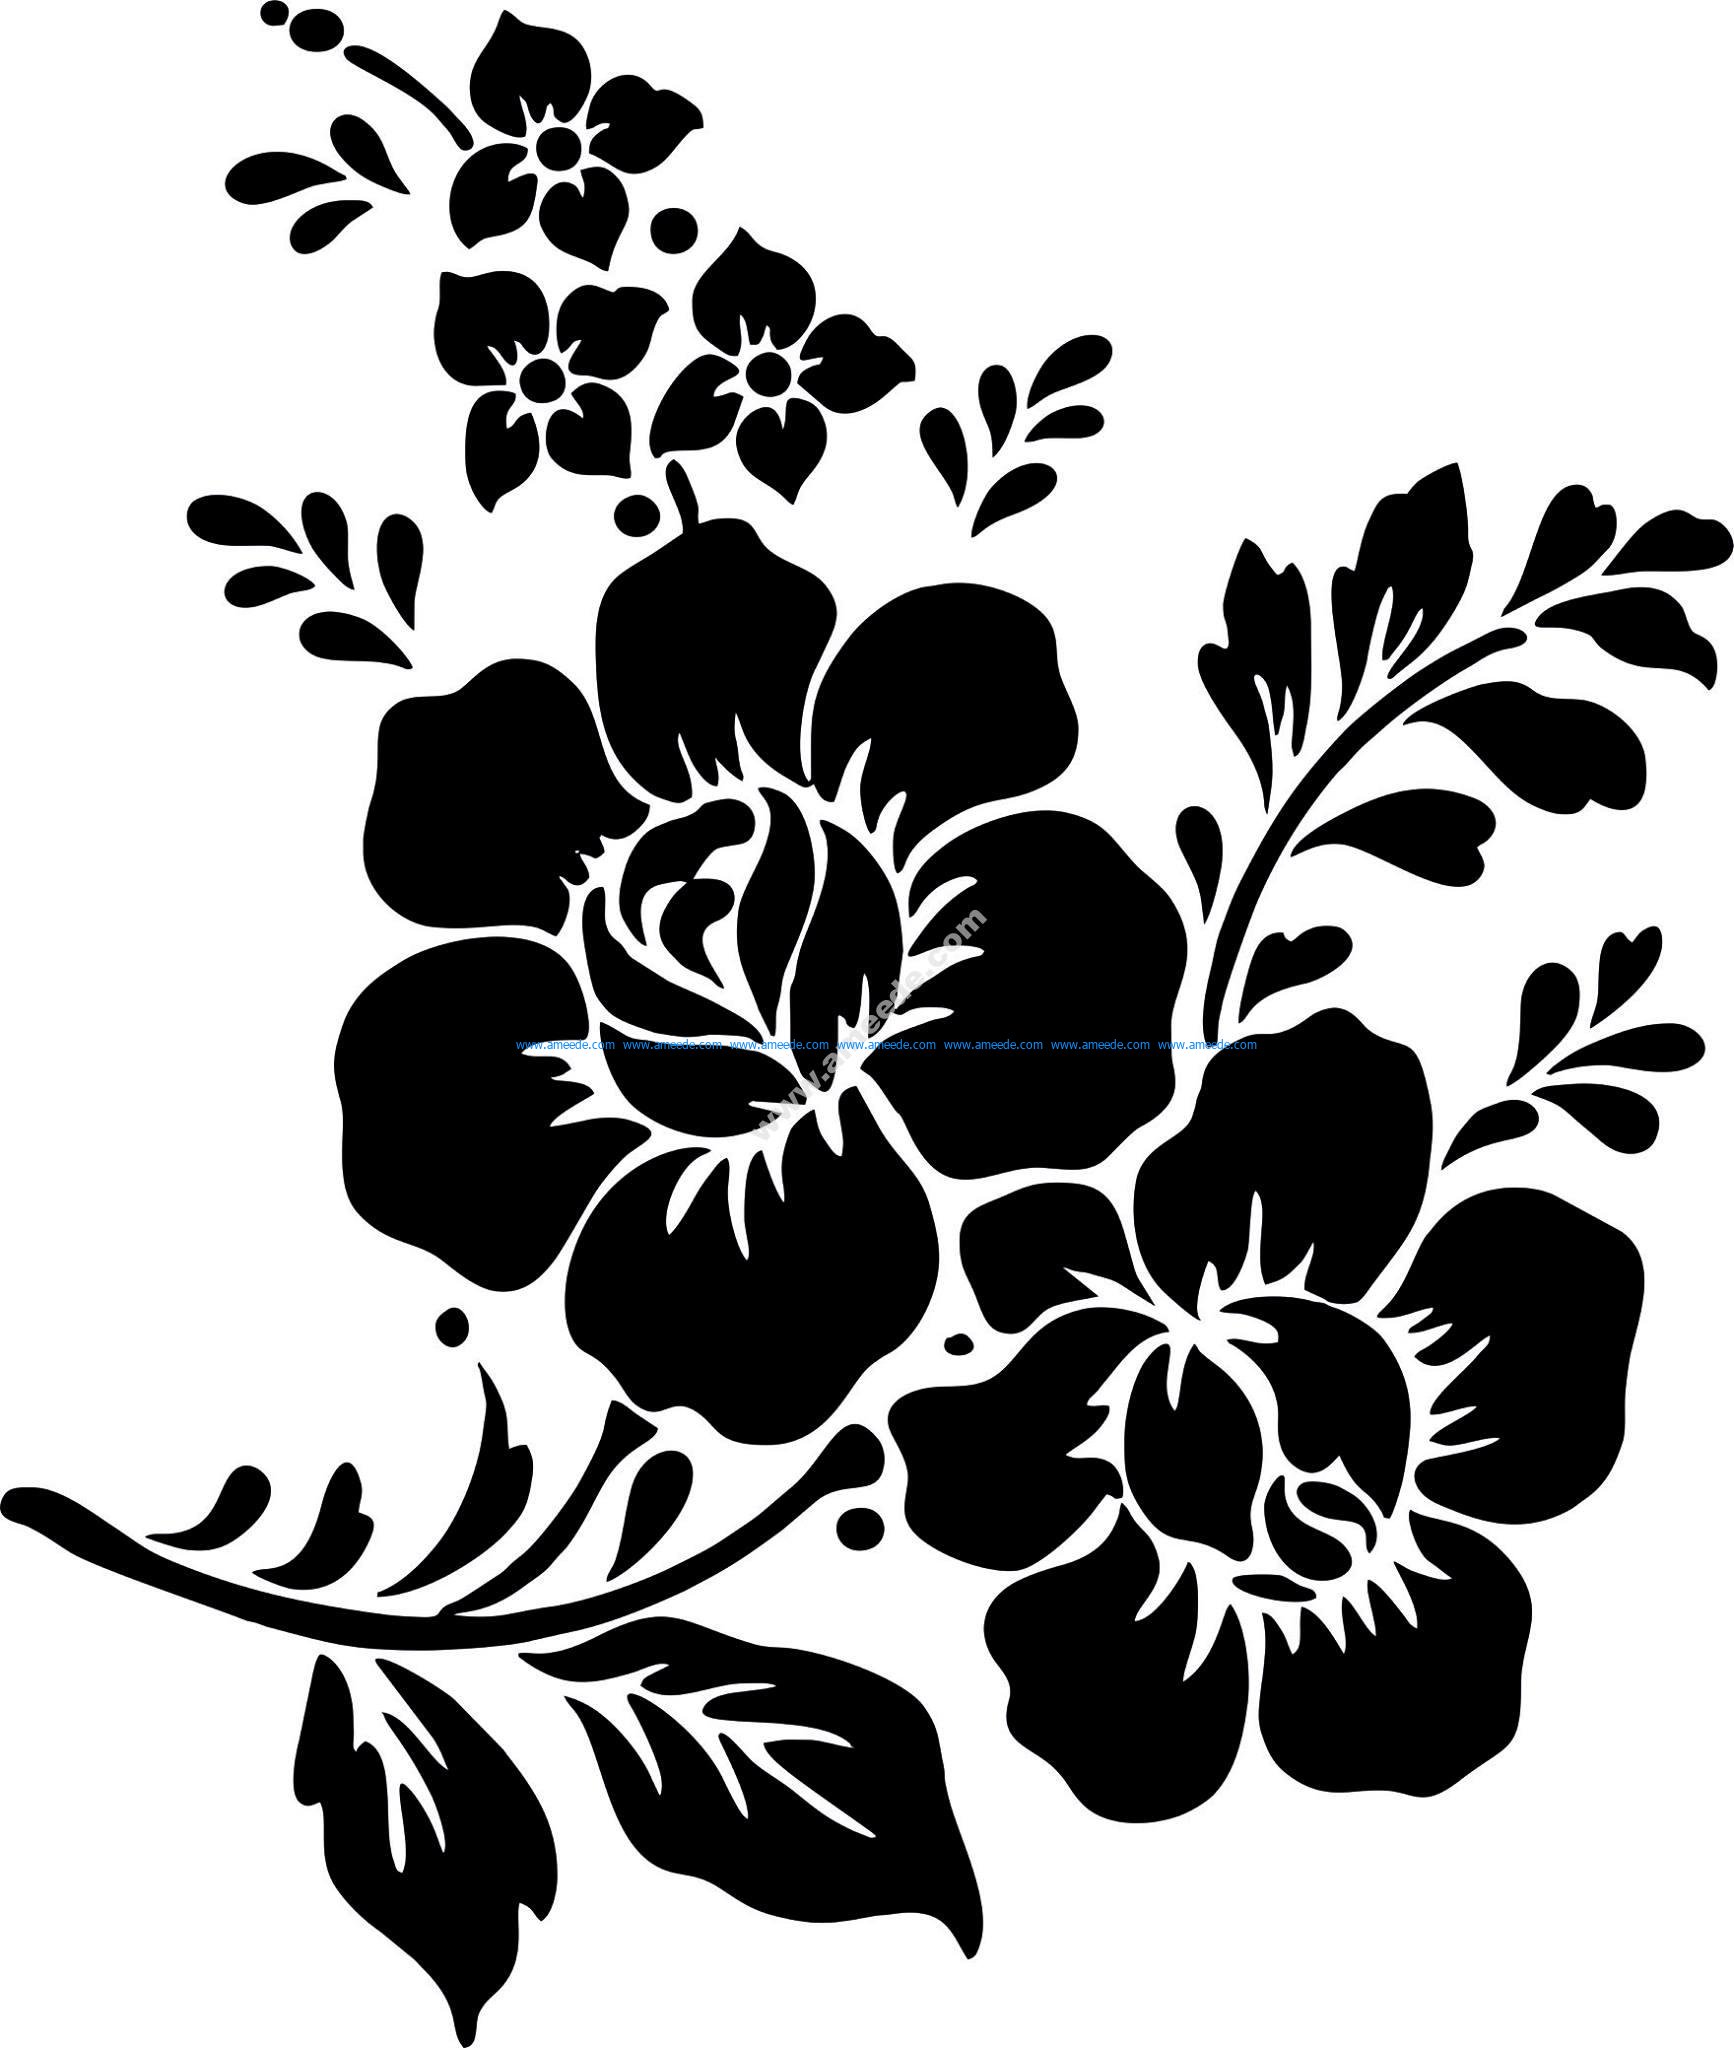 Download Rose Flower Vector Vector Art jpg - Download Free Vector